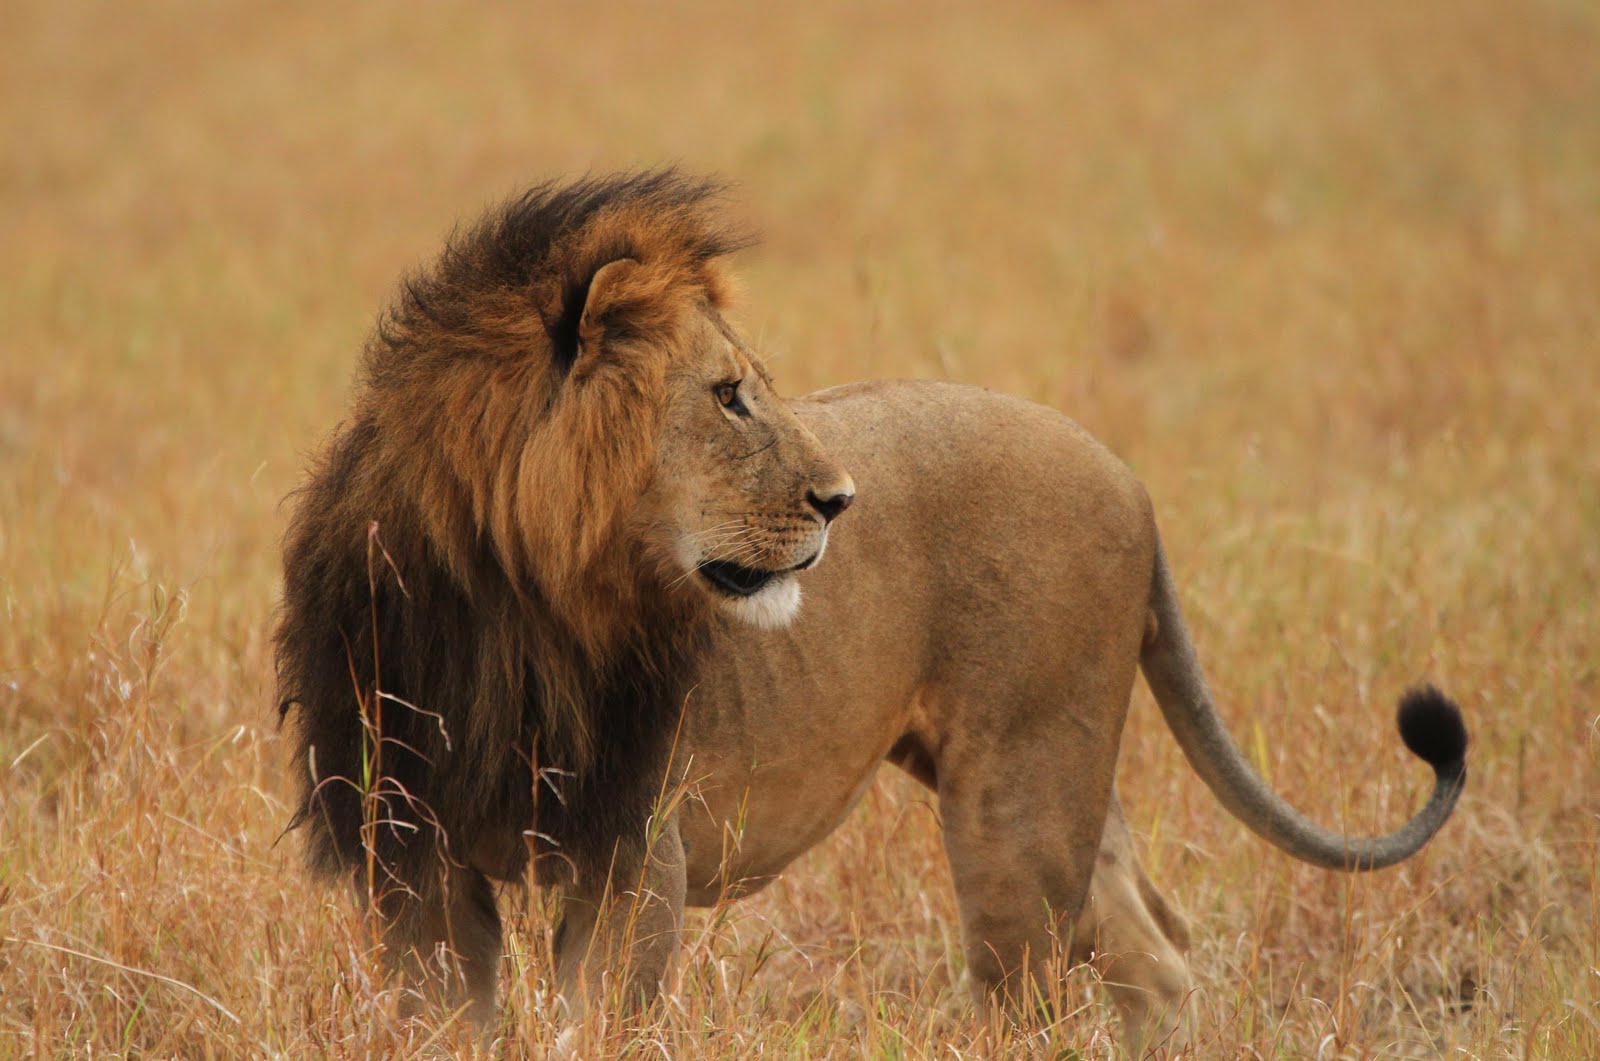 Sarath C R Blog: The Lions of Masai Mara